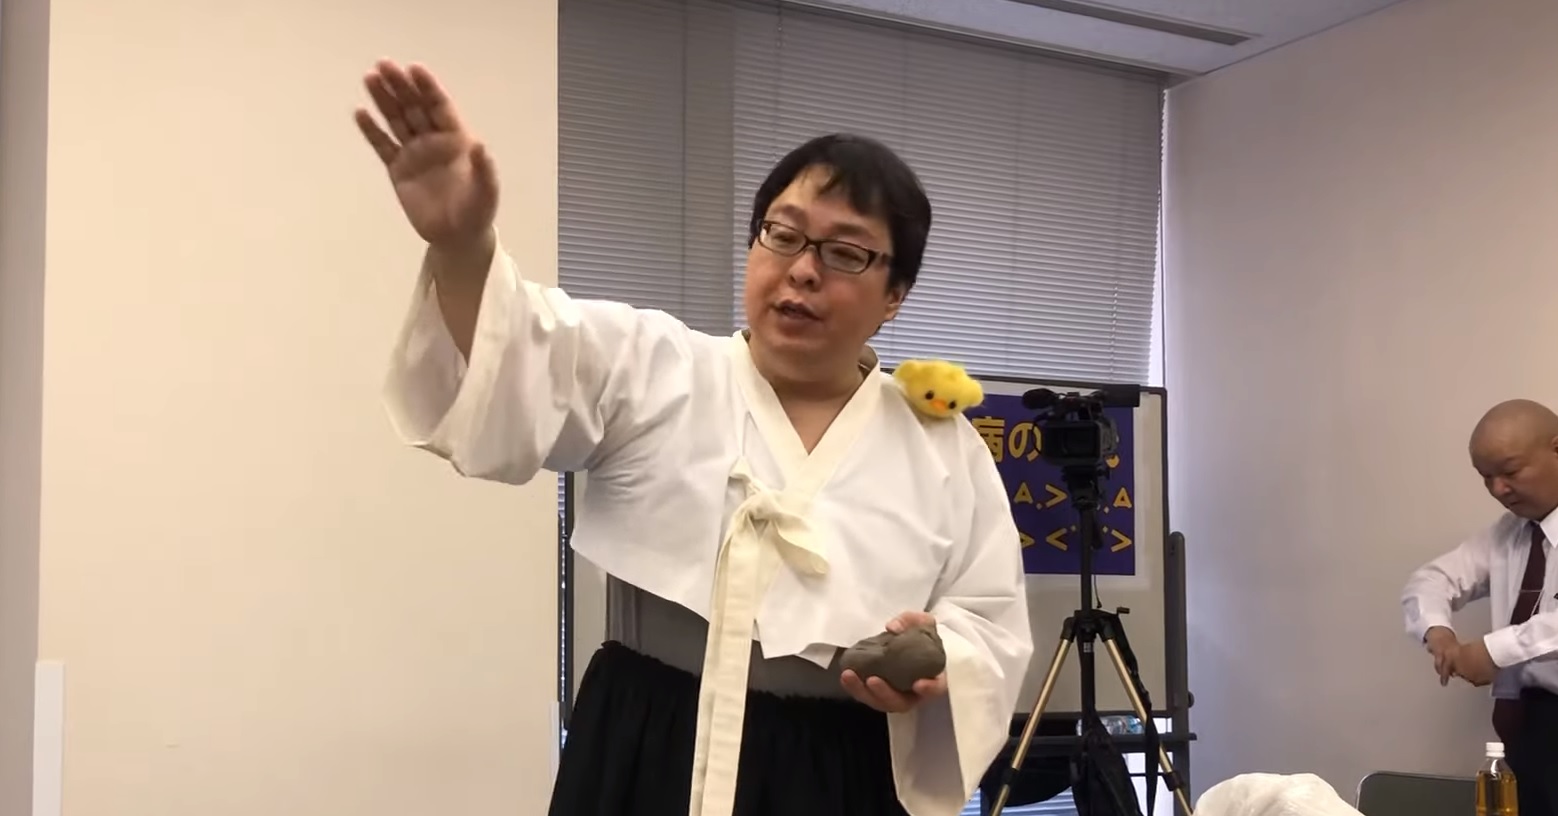 흰색 저고리에 검정색 치마를 입고 ‘평화의 소녀상’을 조롱하는 연설을 하고 있는 일본의 혐한단체 ’재일 특권을 용납하지 않는 시민의 모임‘(재특회)의 전 회장 사쿠라이 마코토. <유튜브 화면 캡처>